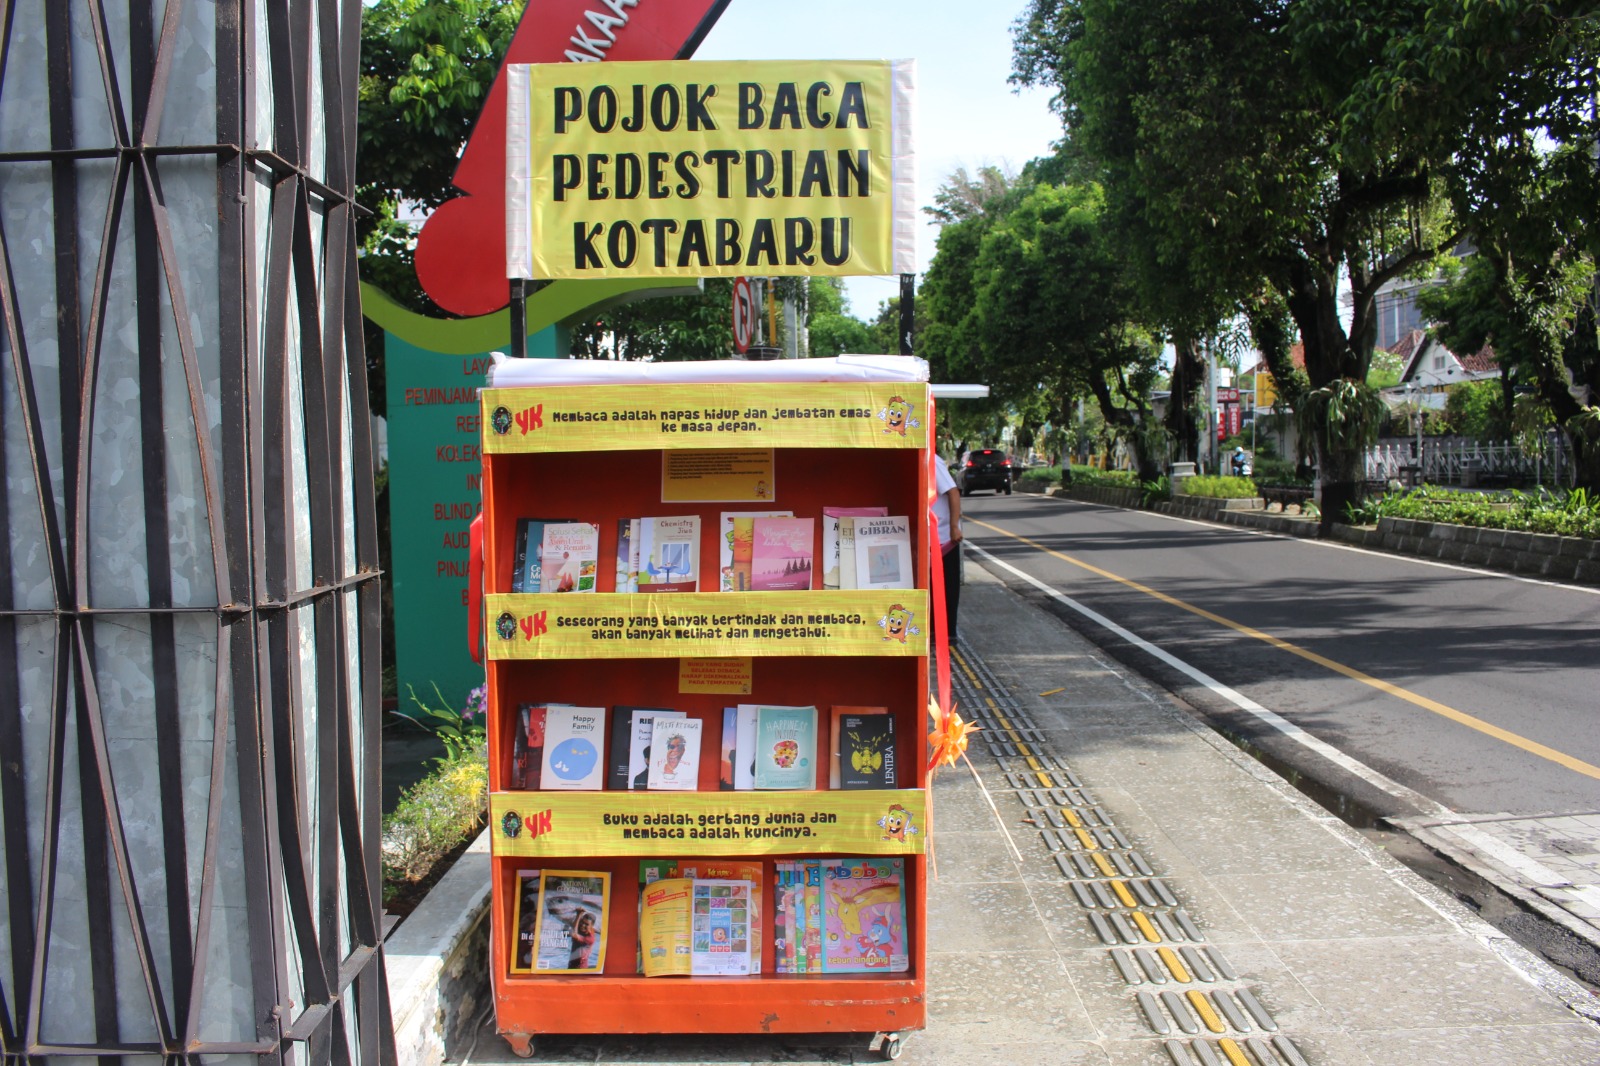 Perpustakaan Kota Jogja Hadirkan Pojok Baca di Pedestrian Kotabaru